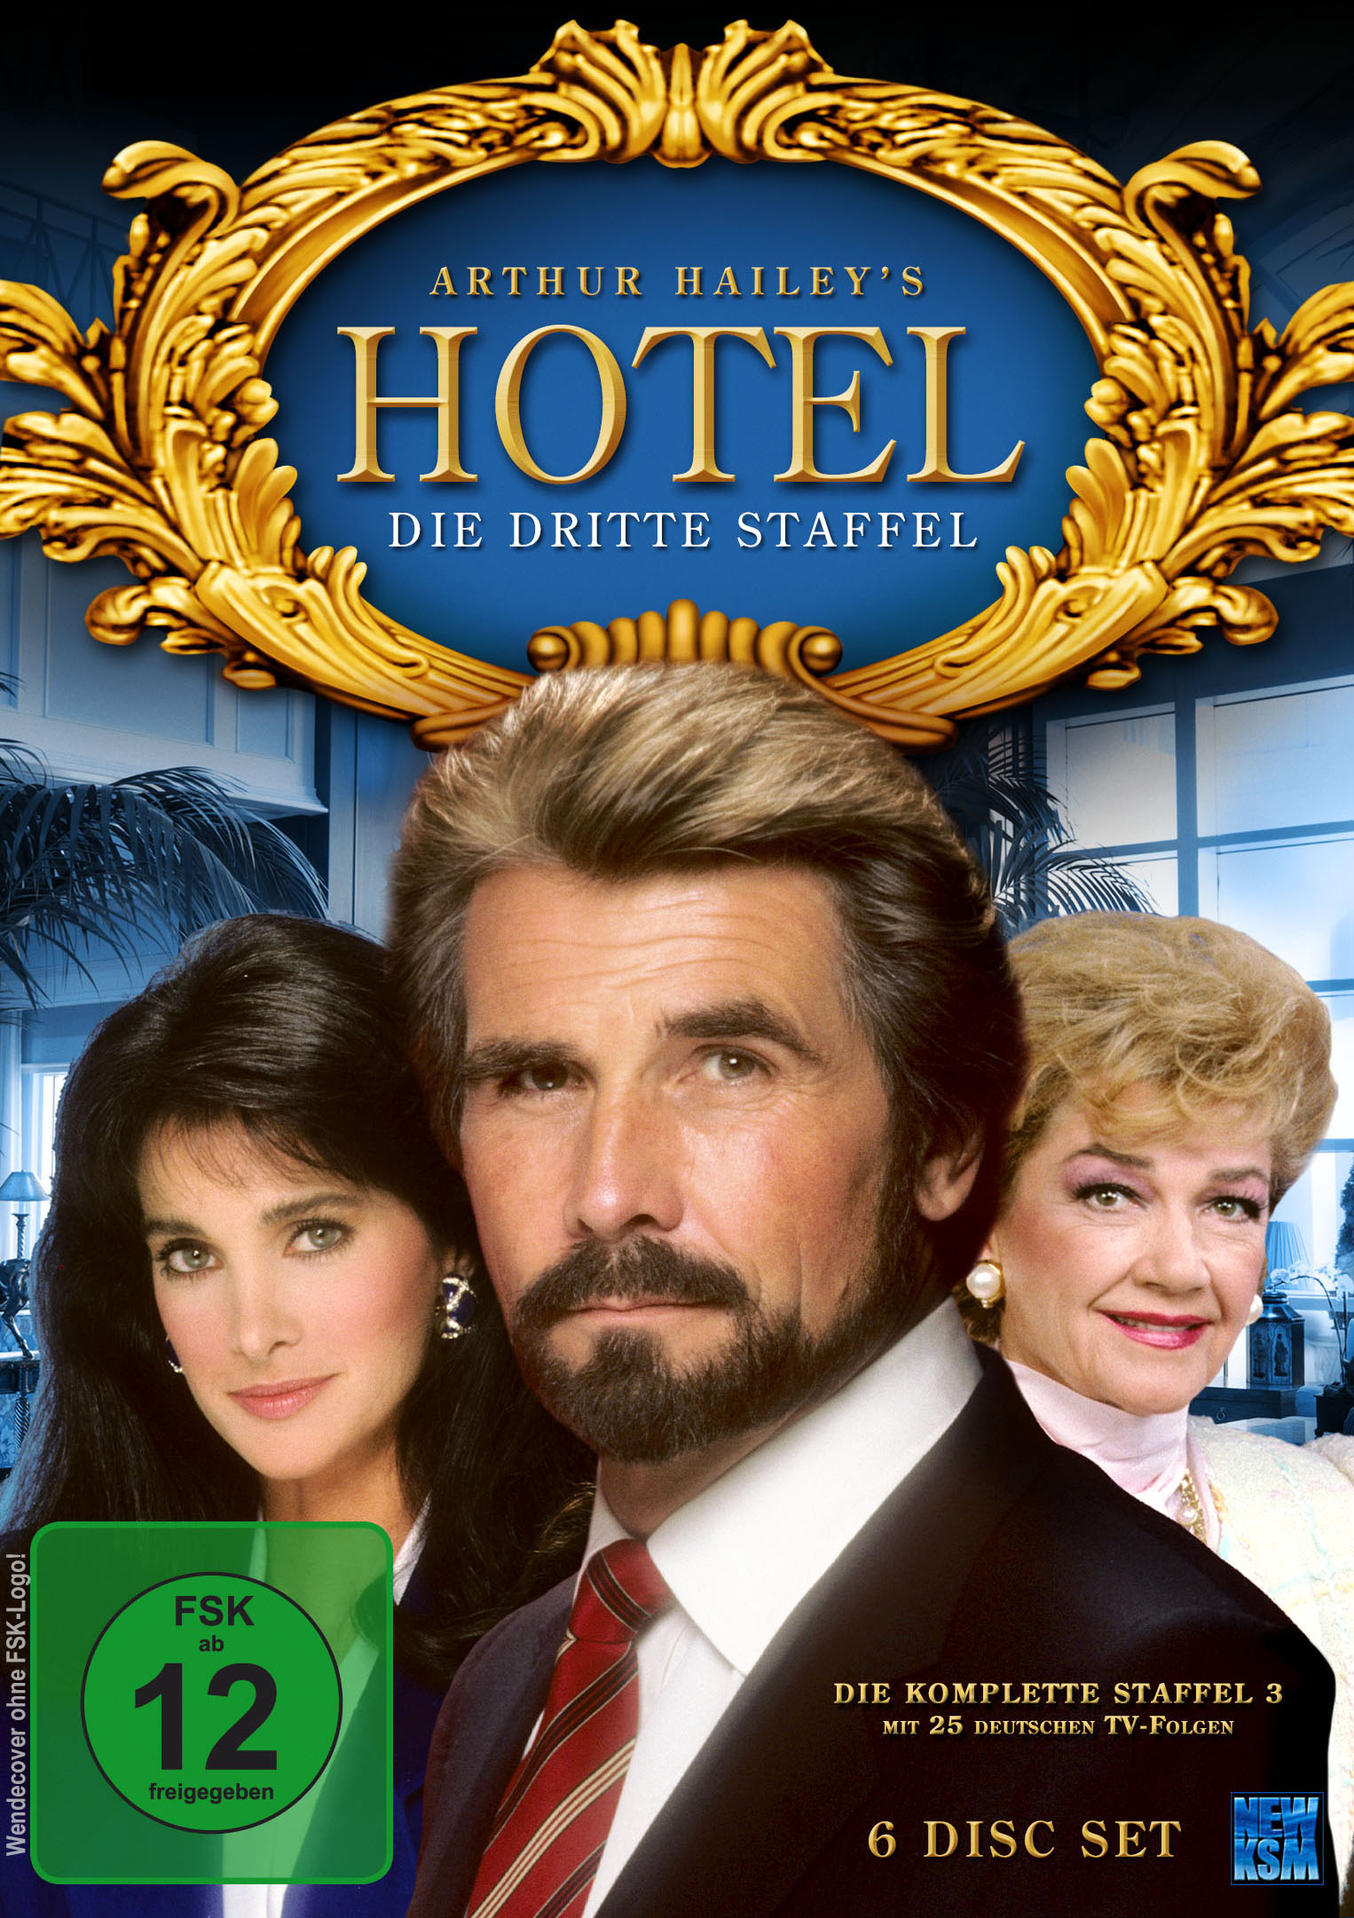 51-75 DVD EPISODE HOTEL-STAFFEL 3: